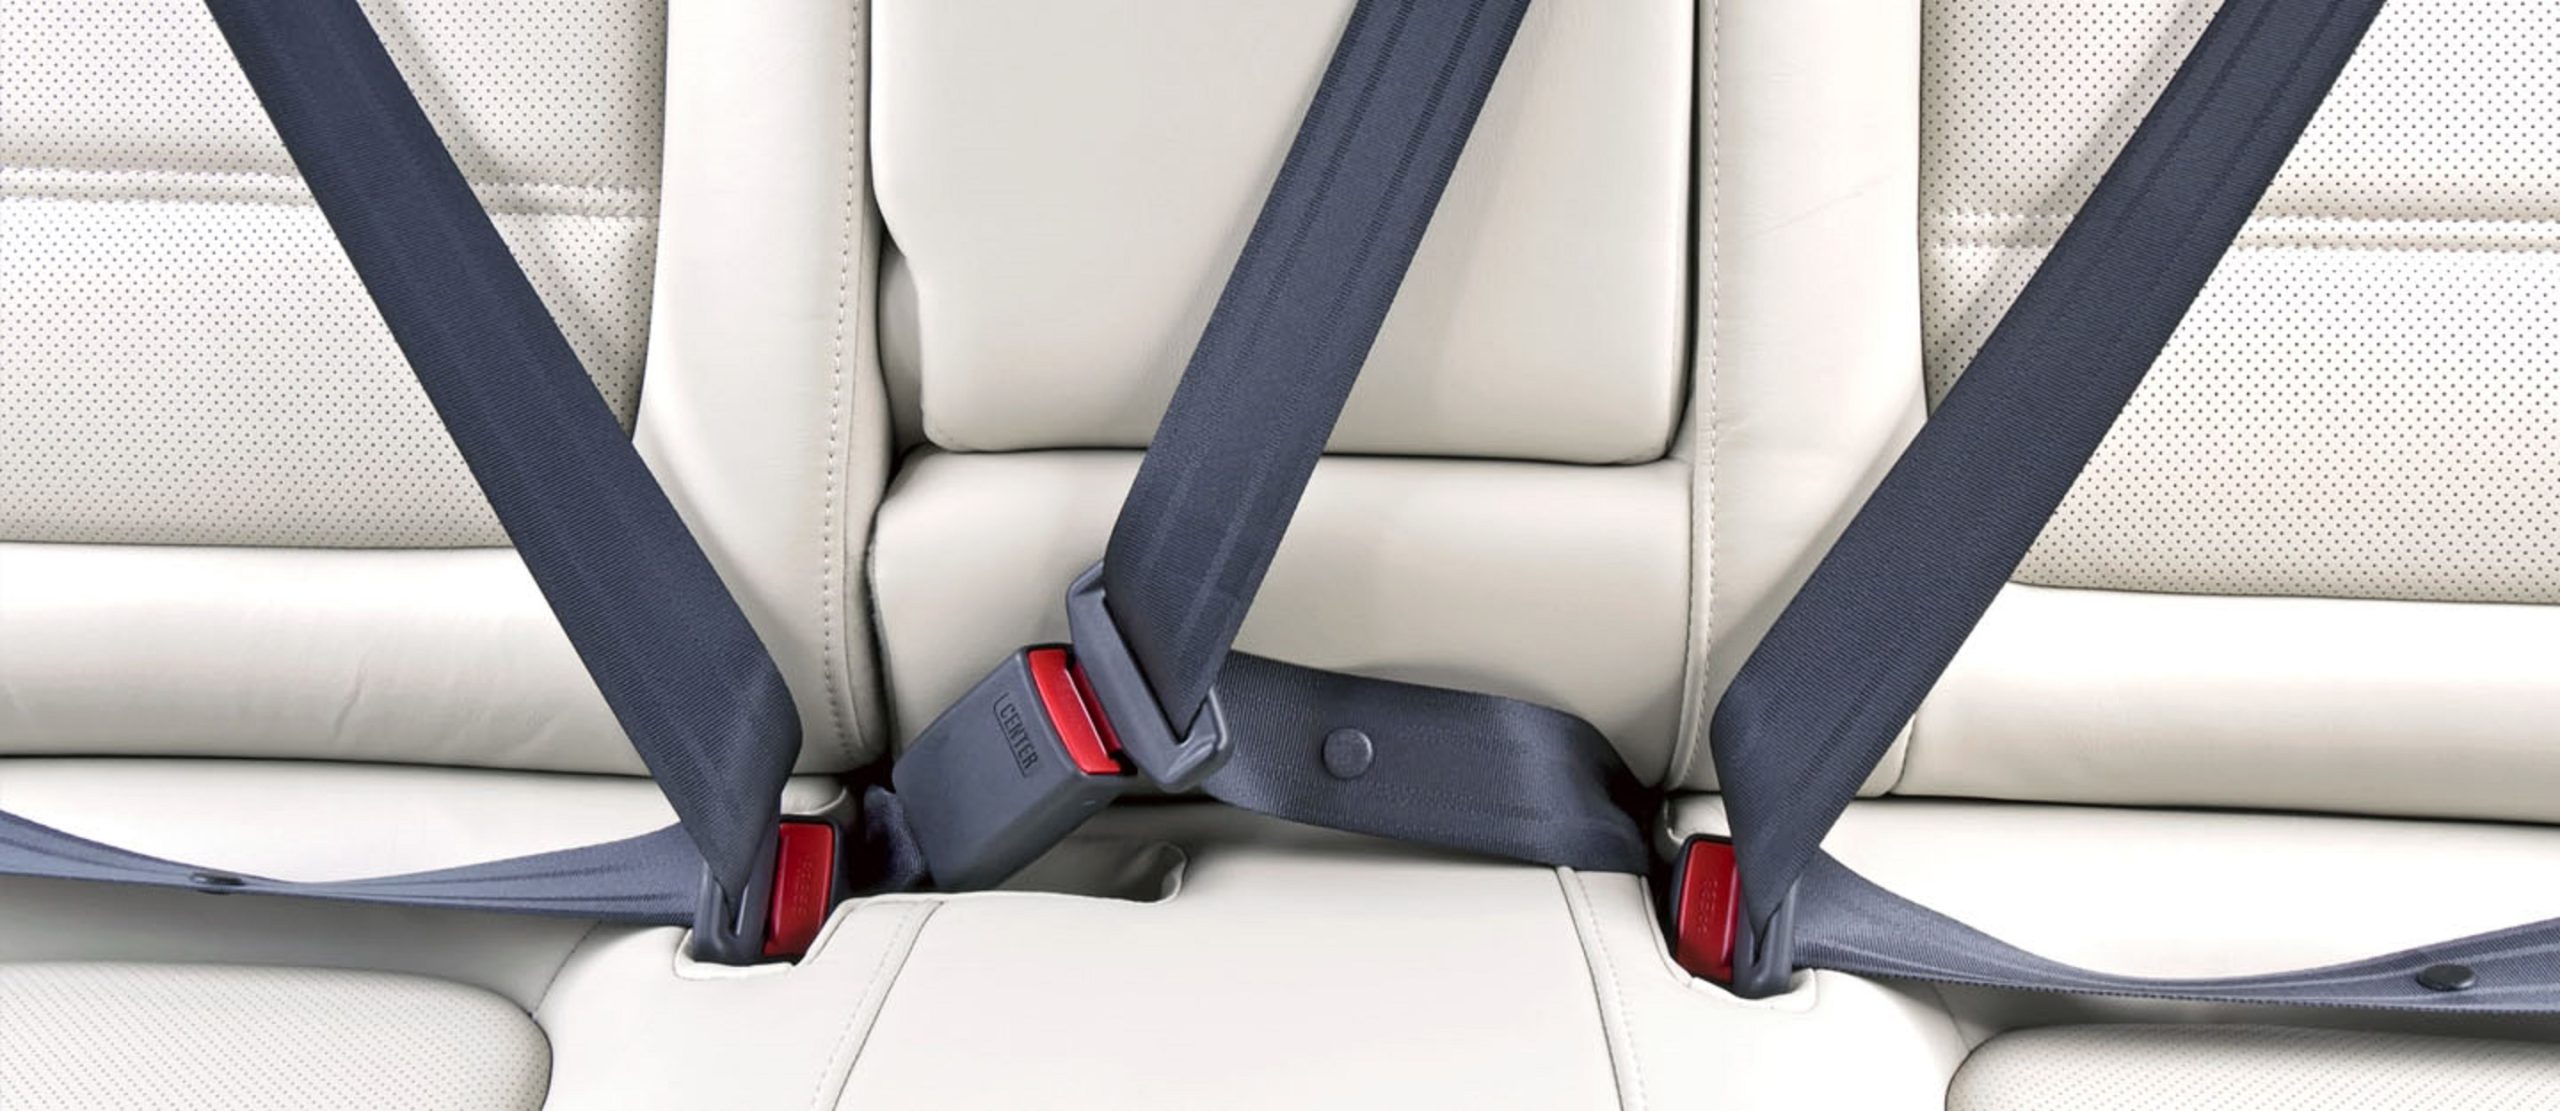 Пассажирский ремень безопасности. Seat Belt. Ремни безопасности системы Belt-in-Seat (bis). Car Safety Seat Belt. Ремень безопасности трехточечный ЛИАЗ.